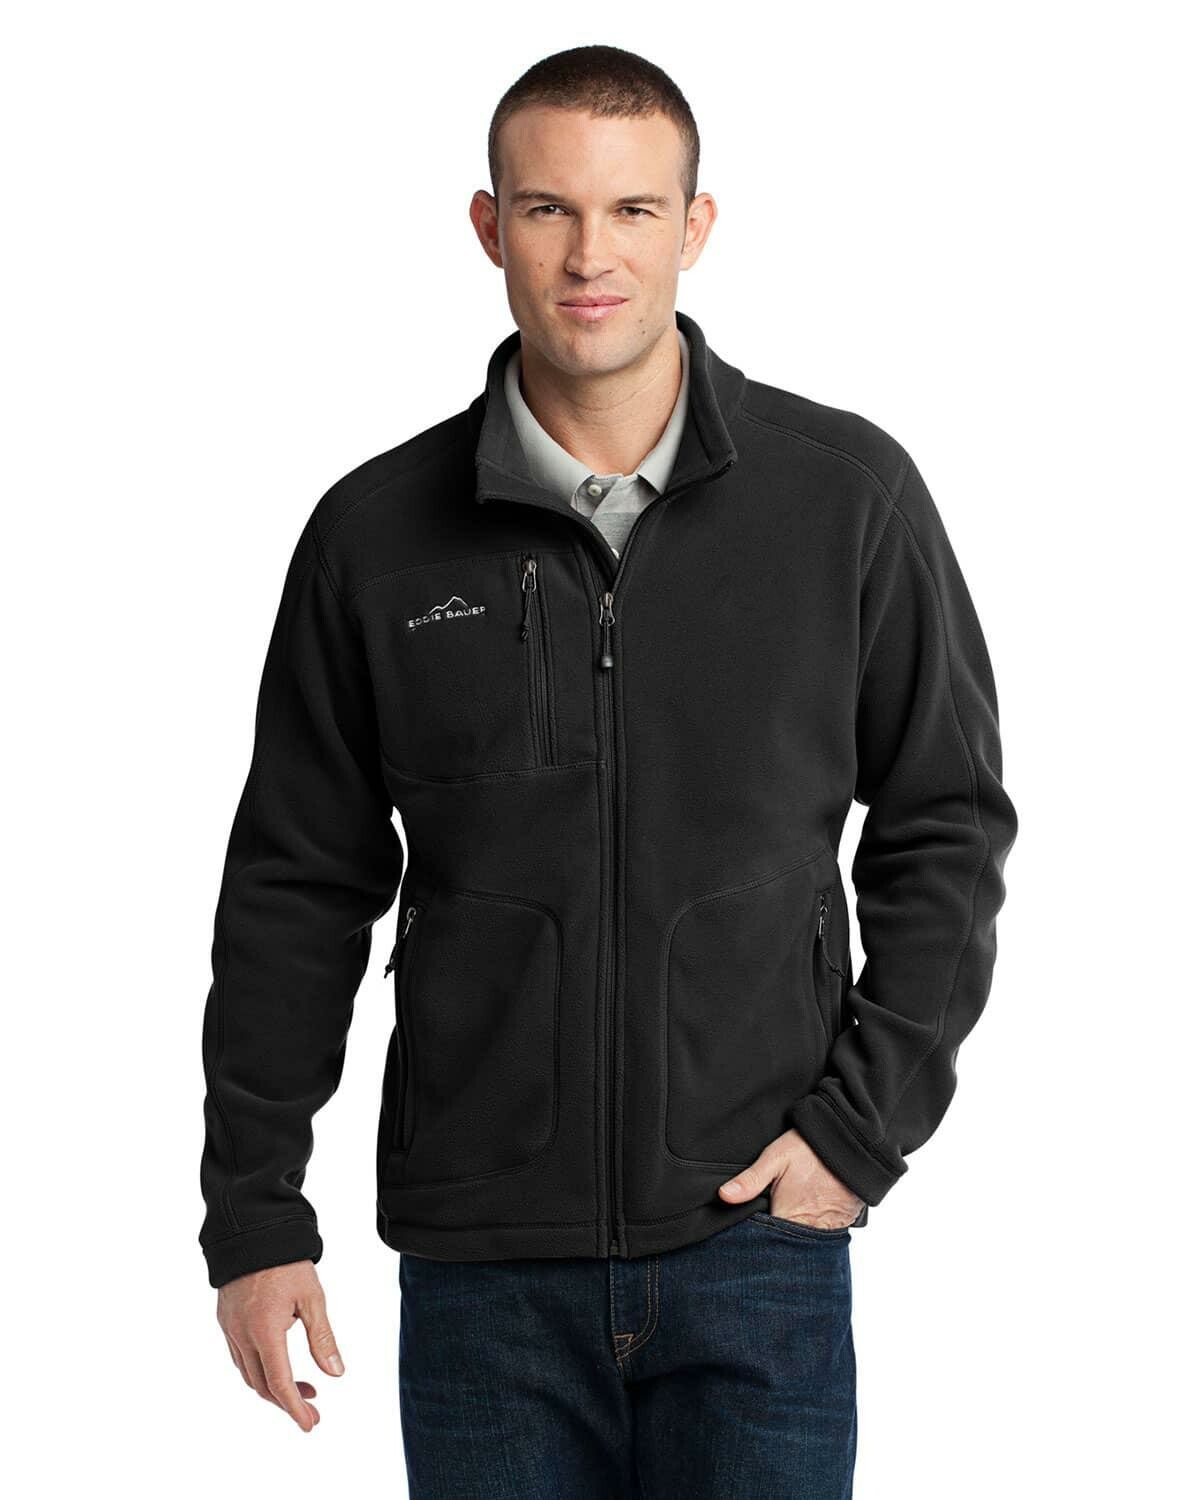 Custom Eddie Bauer EB230 Mens Wind Resistant Full Zip Fleece Jacket